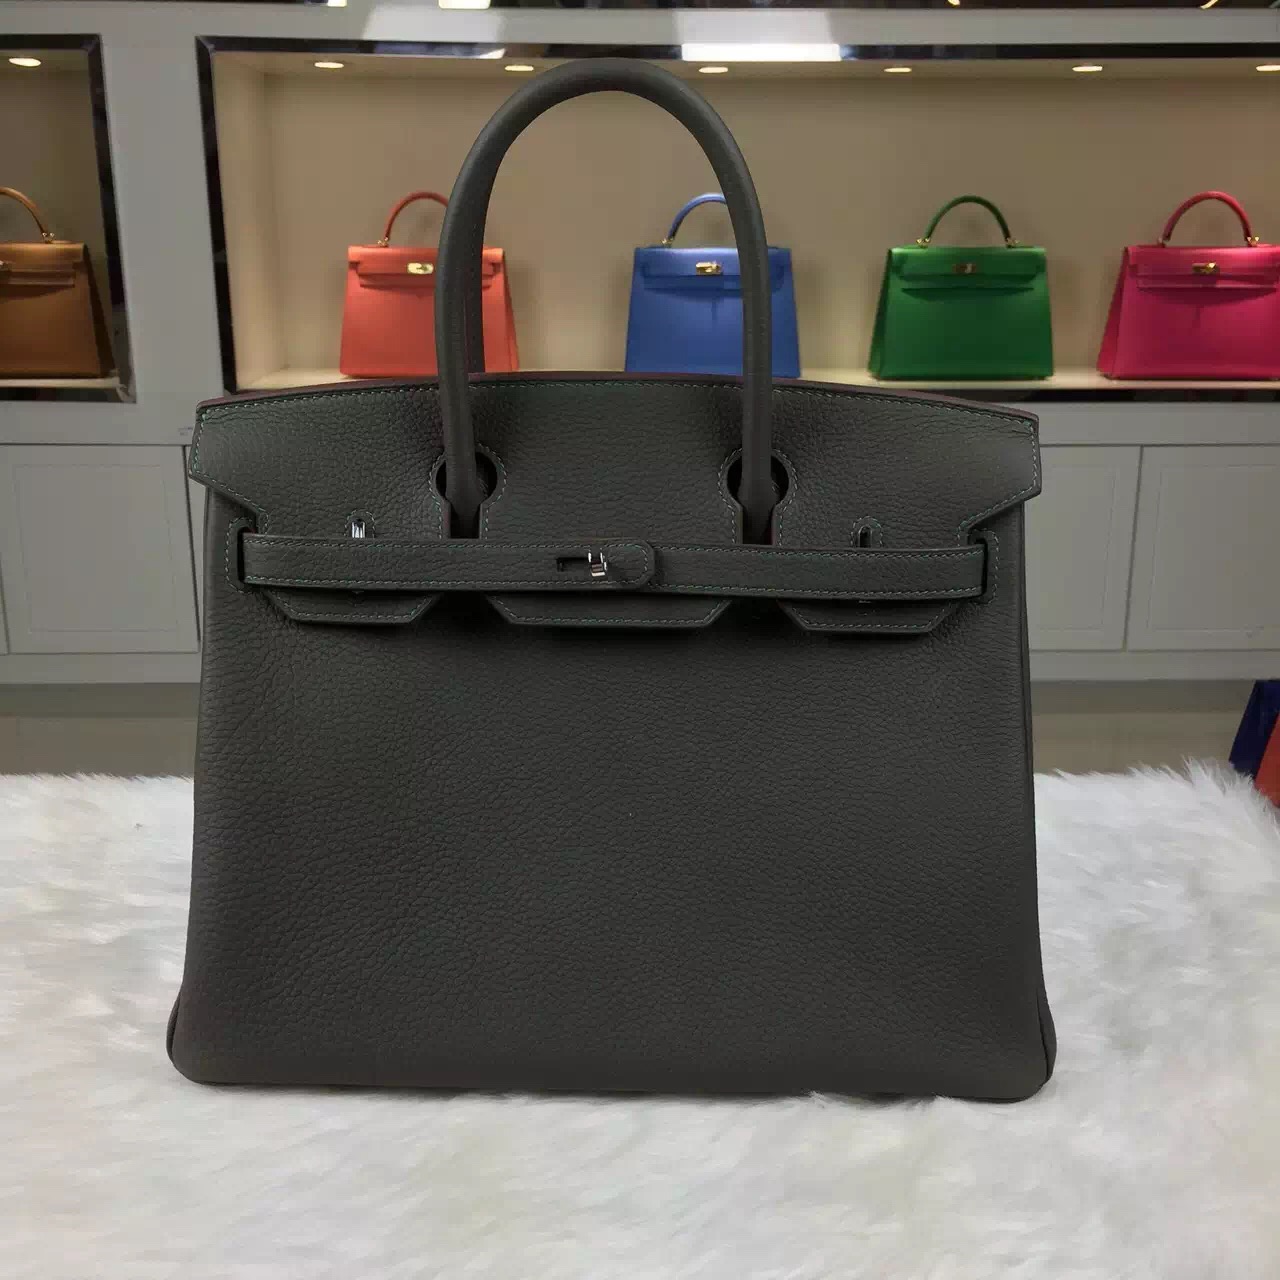 Discount Hermes Birkin Bag 30CM Multi-color France Togo Calfskin Leather Tote Bag